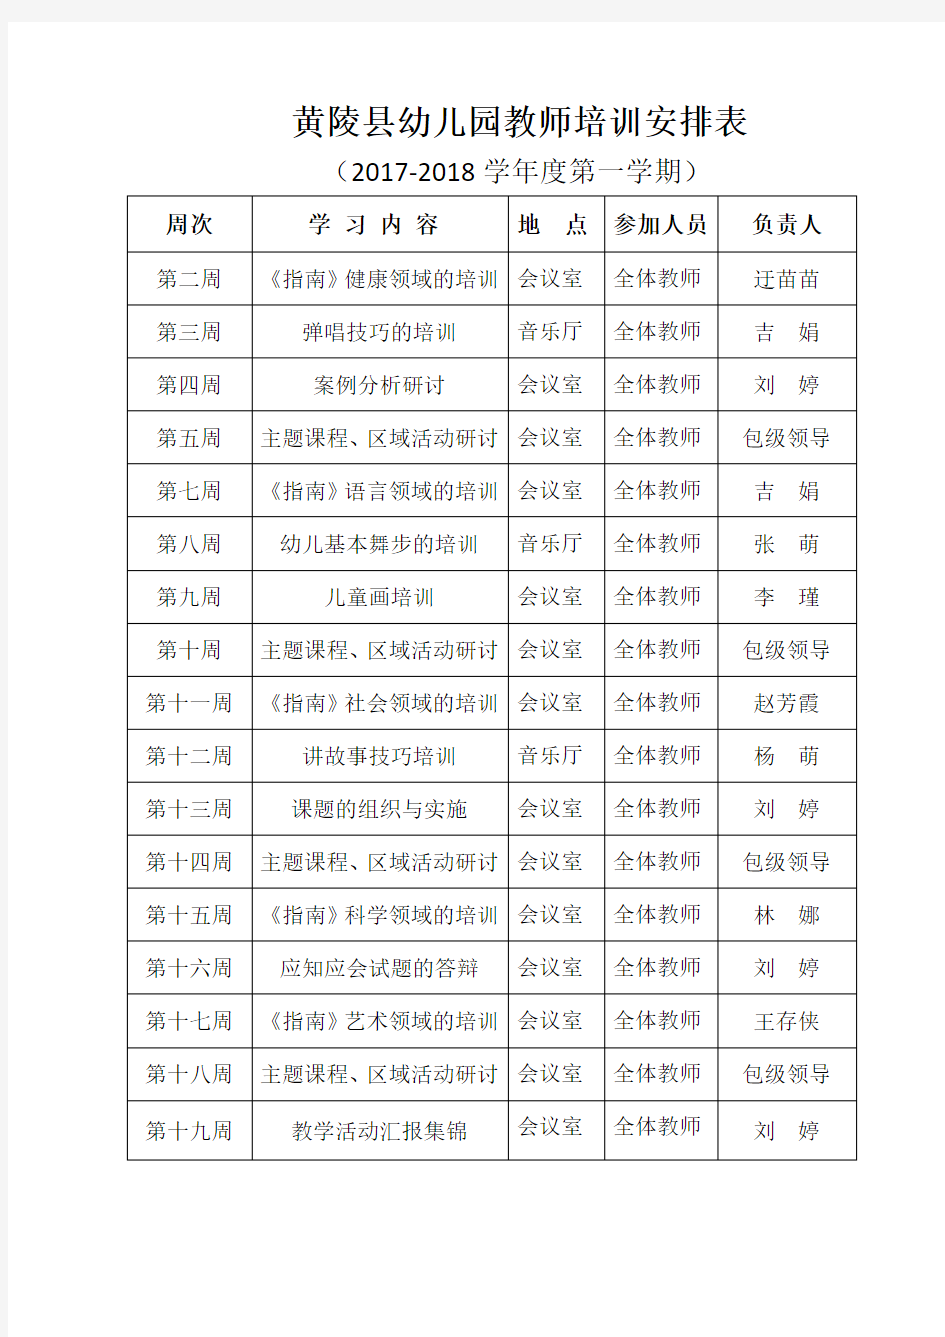 黄陵县幼儿园教师培训安排表